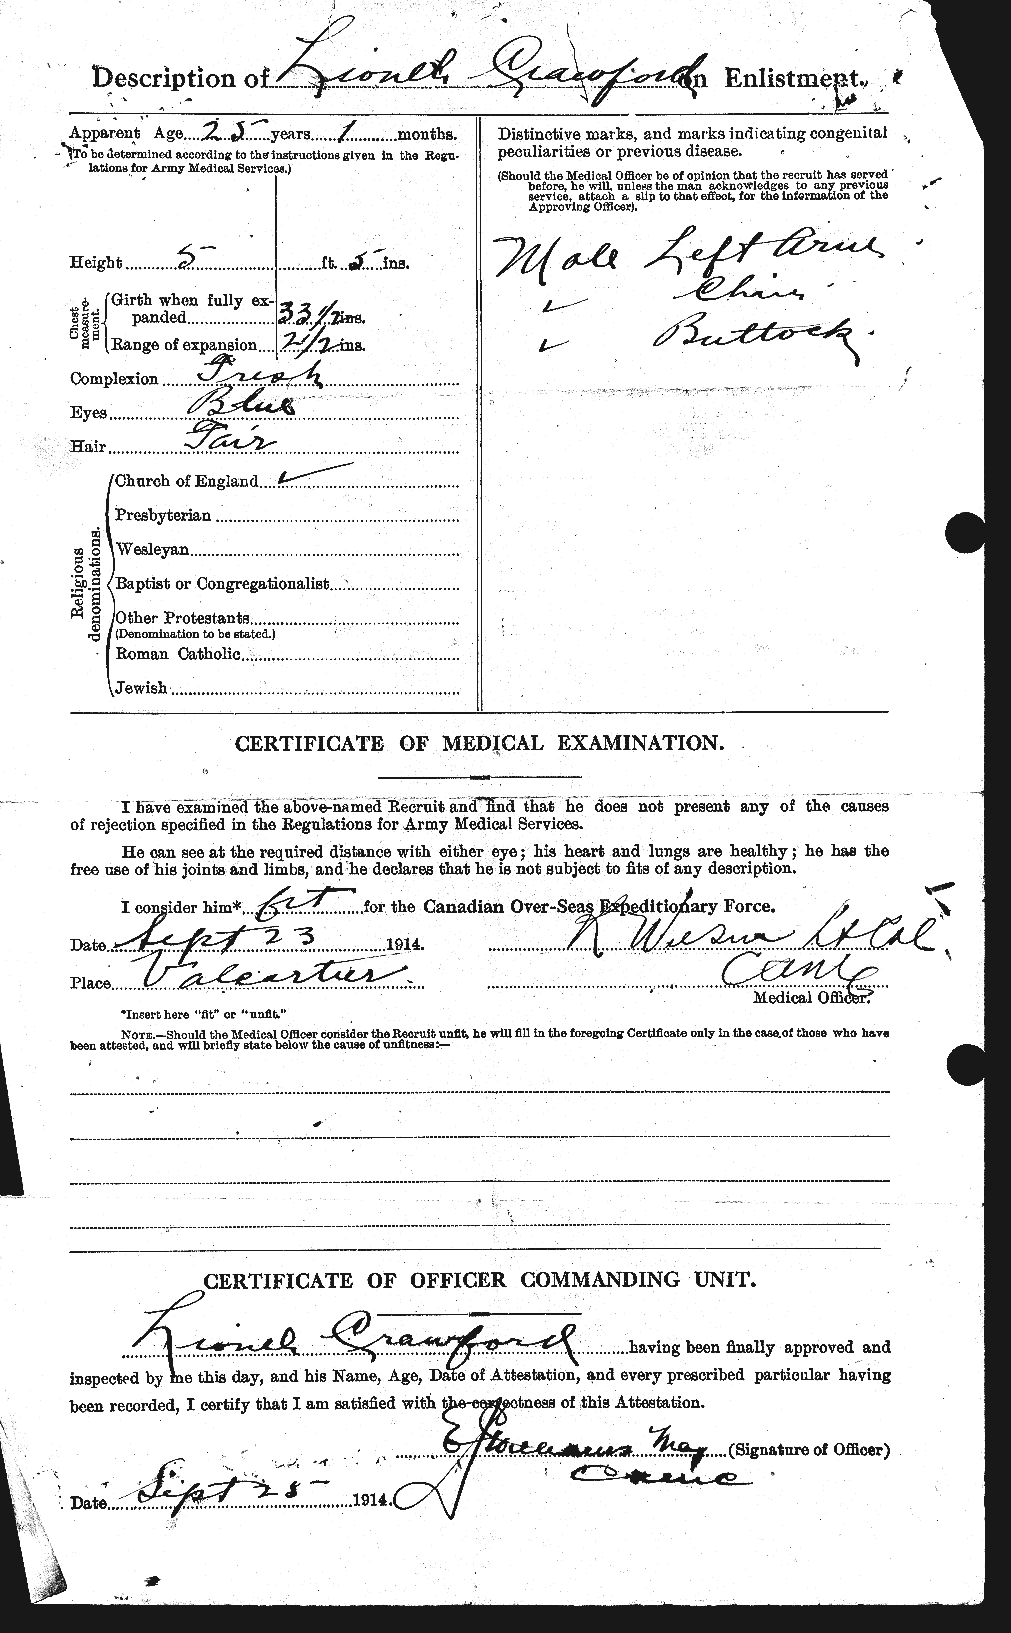 Dossiers du Personnel de la Première Guerre mondiale - CEC 061794b